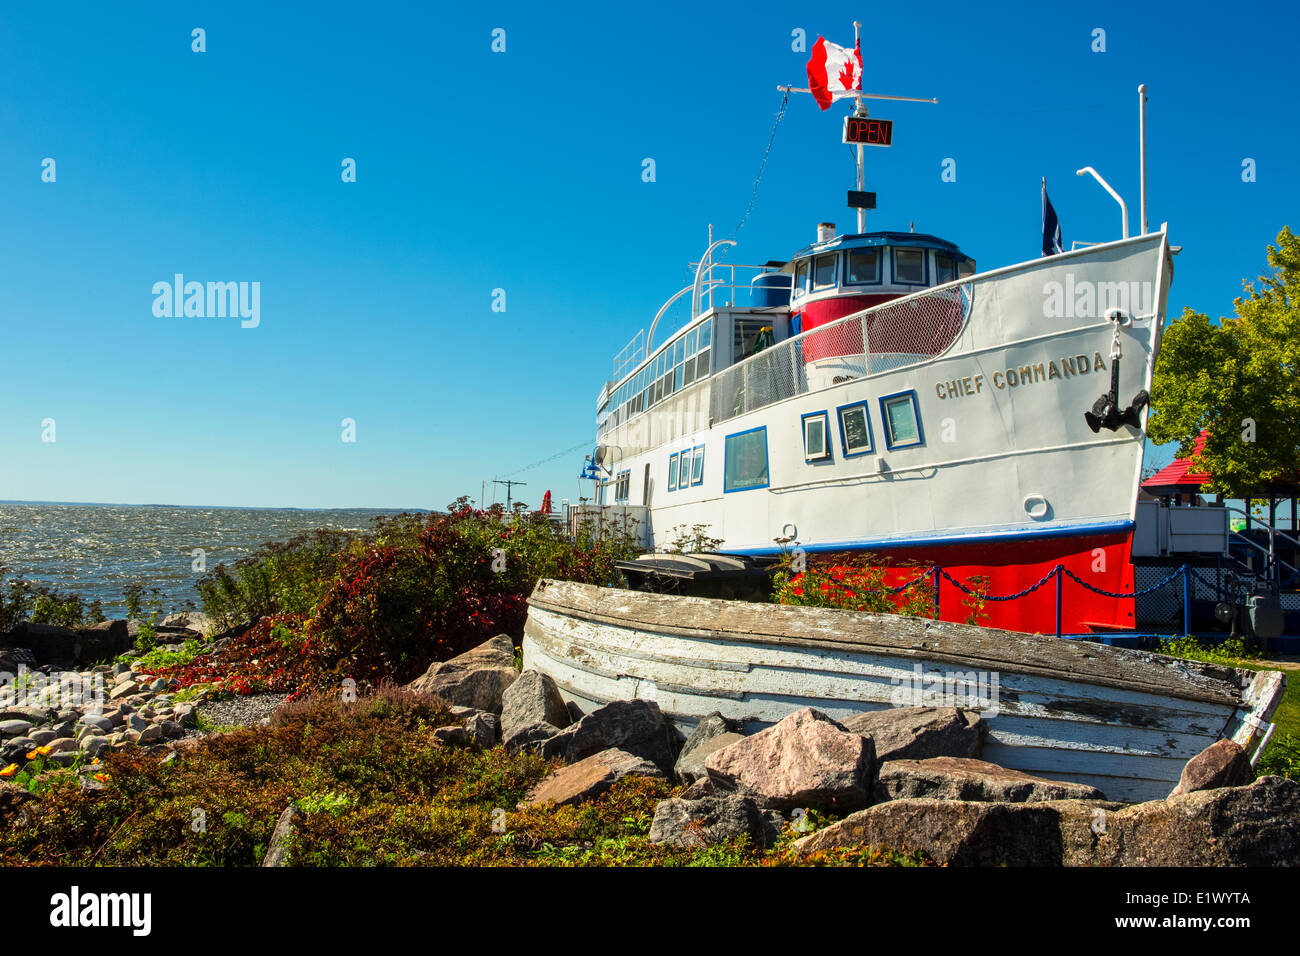 Excursión en barco, Chief Commanda Waterfront, North Bay, Ontario, Canadá Foto de stock